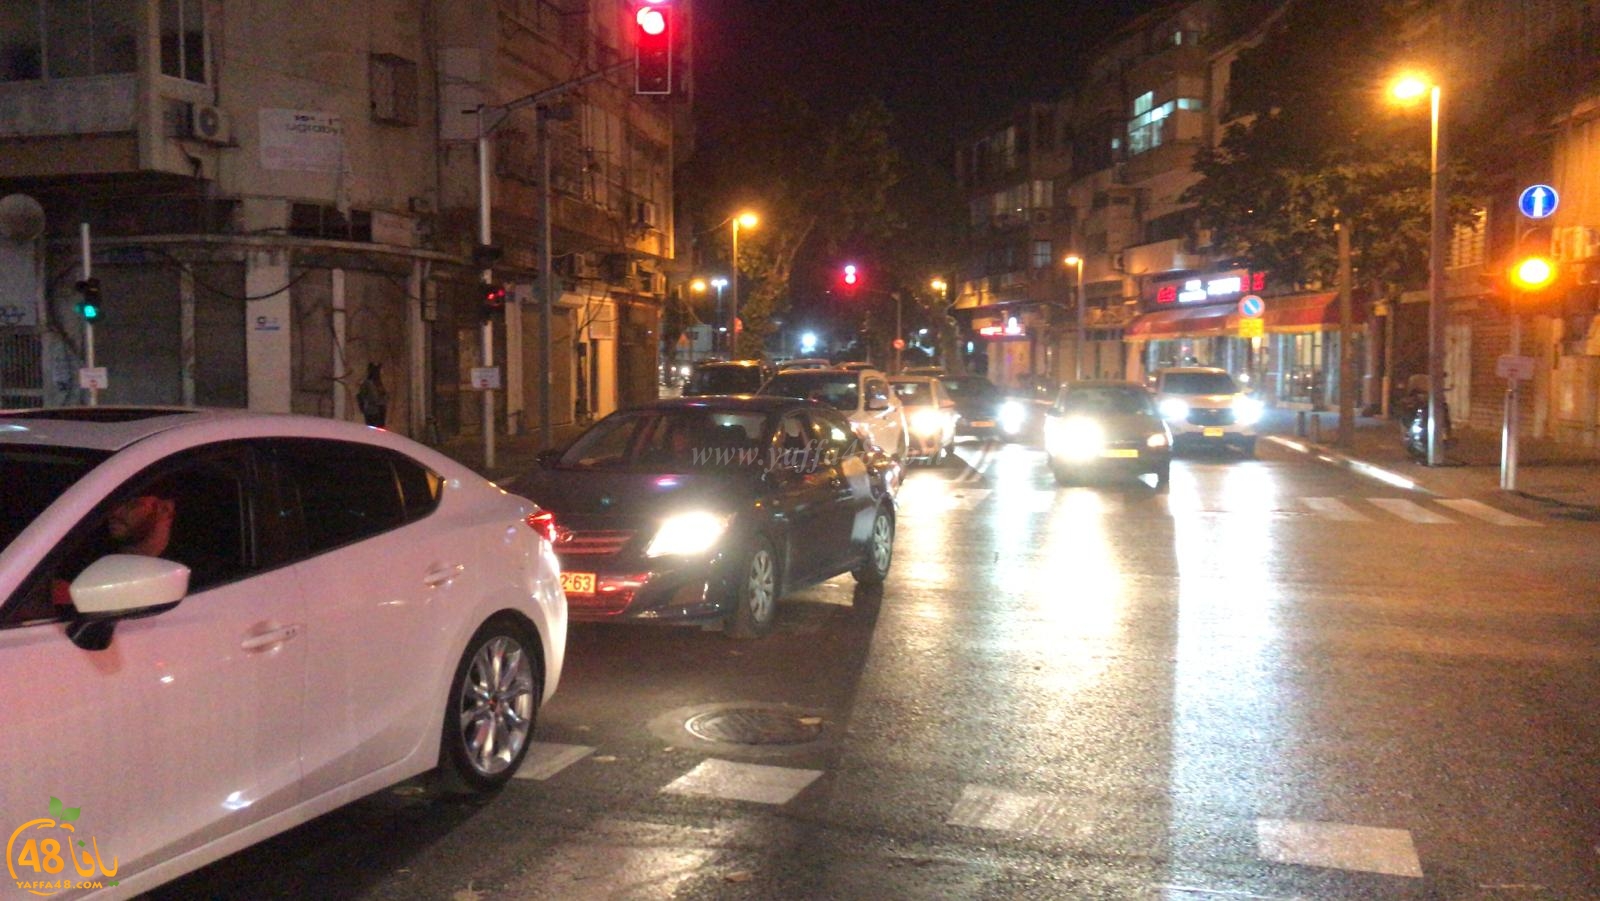 فيديو: تظاهرة غاضبة في يافا احتجاجاً على اغلاق شارع شديروت يروشلايم 